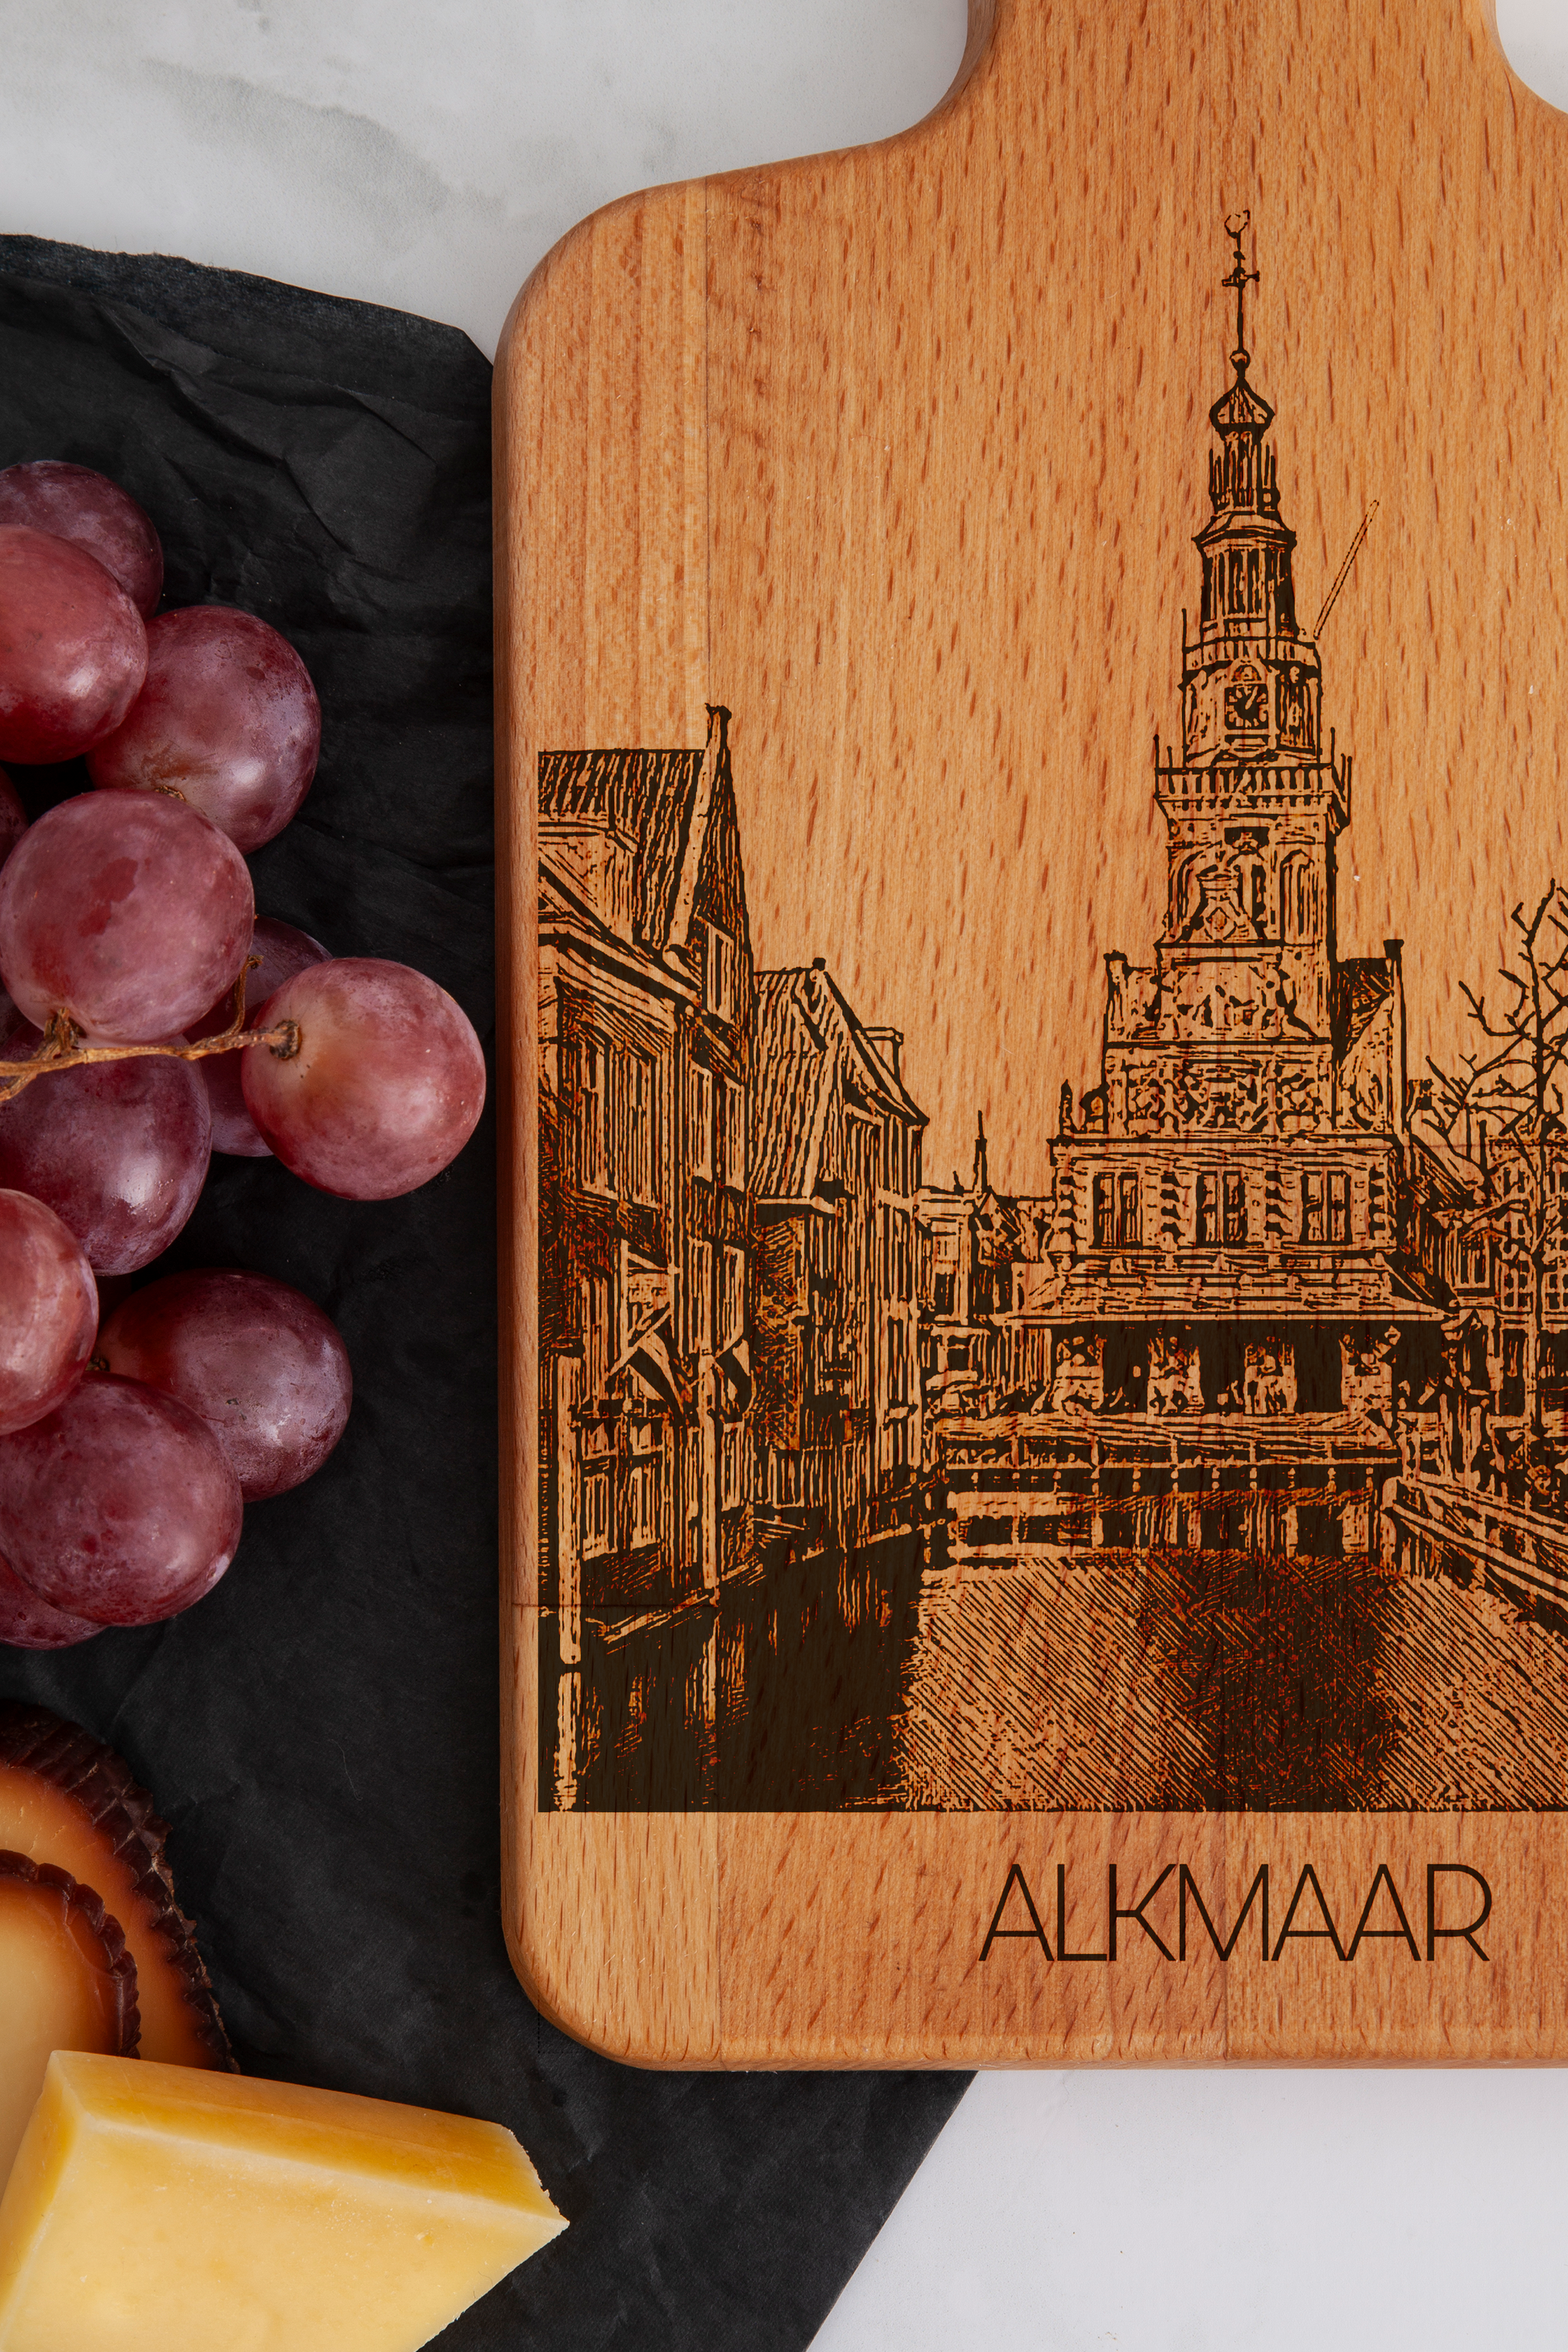 Alkmaar, De Waag, cheese board, close-up